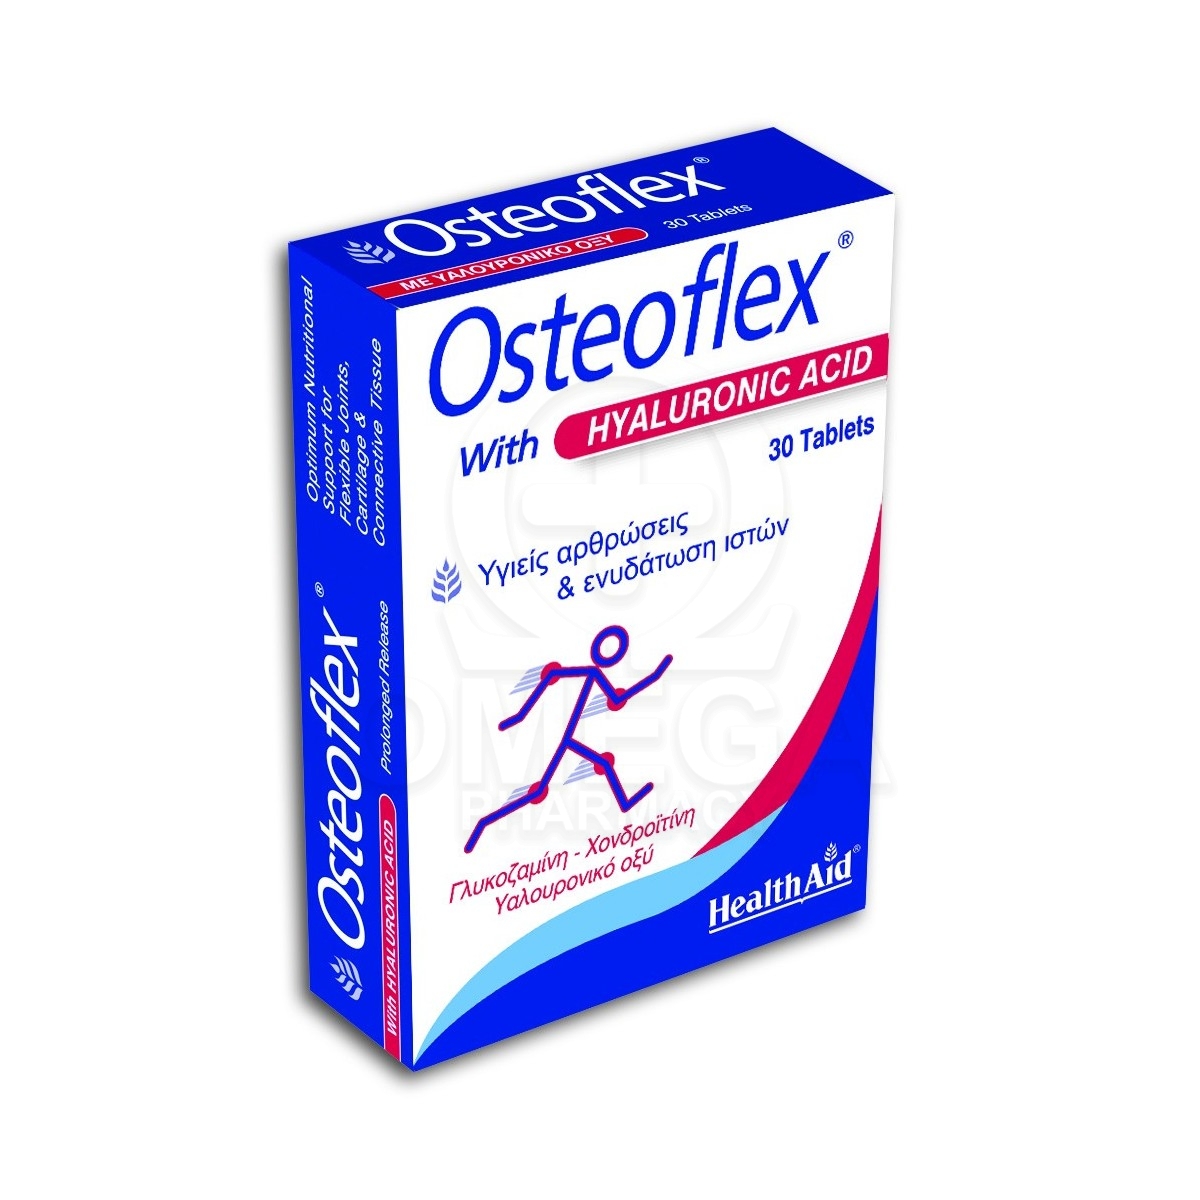 Συμπληρωματα διατροφης health aid osteoflex with hyaluronic acid για